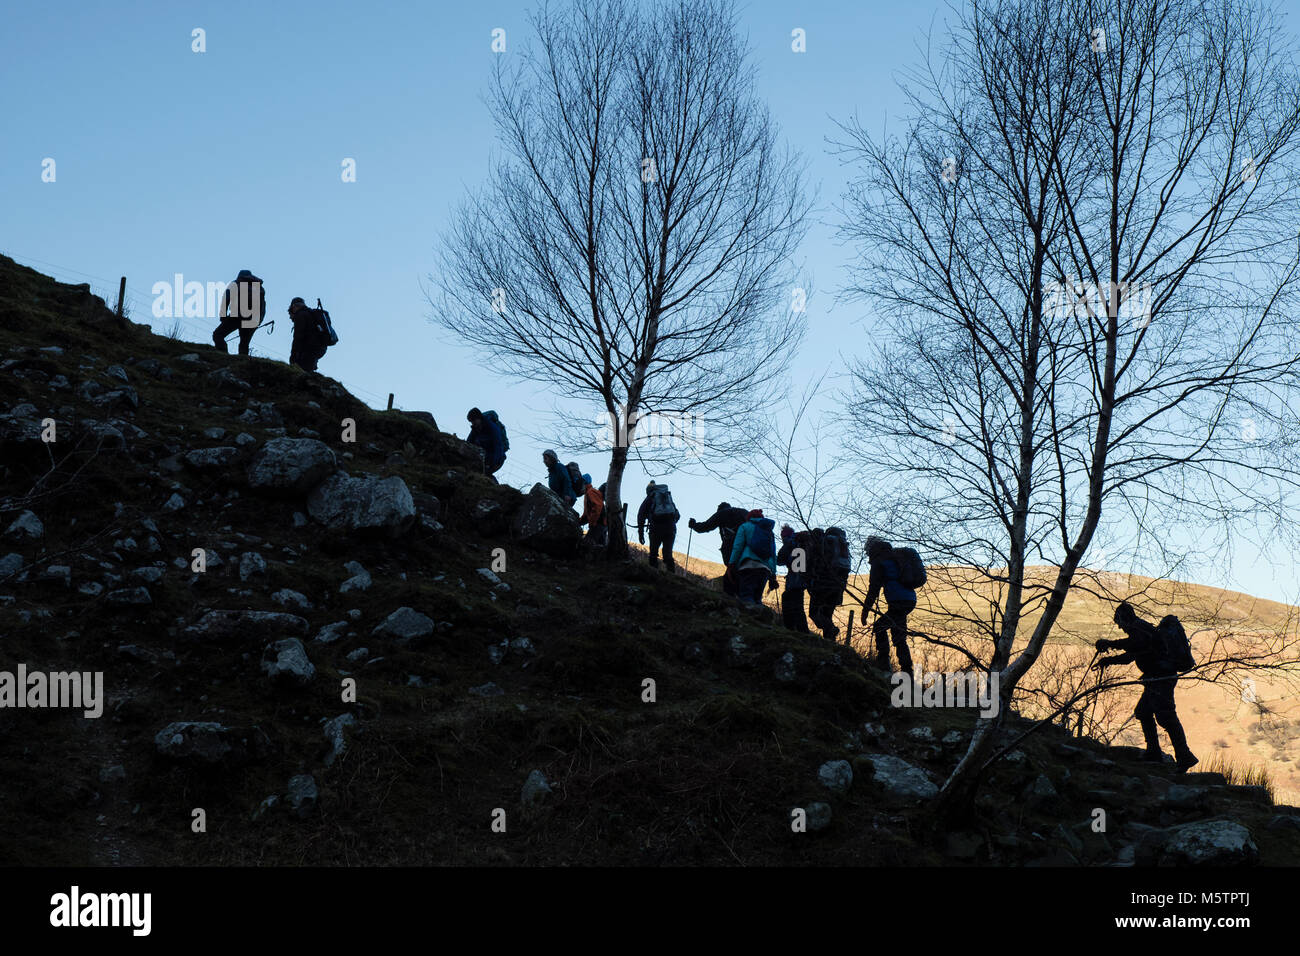 Ramblers gruppo di escursionisti persone escursionismo fino alla cima di una collina in linea in silhouette laterale. Abergwyngregyn, Gwynedd, Wales, Regno Unito, Gran Bretagna Foto Stock